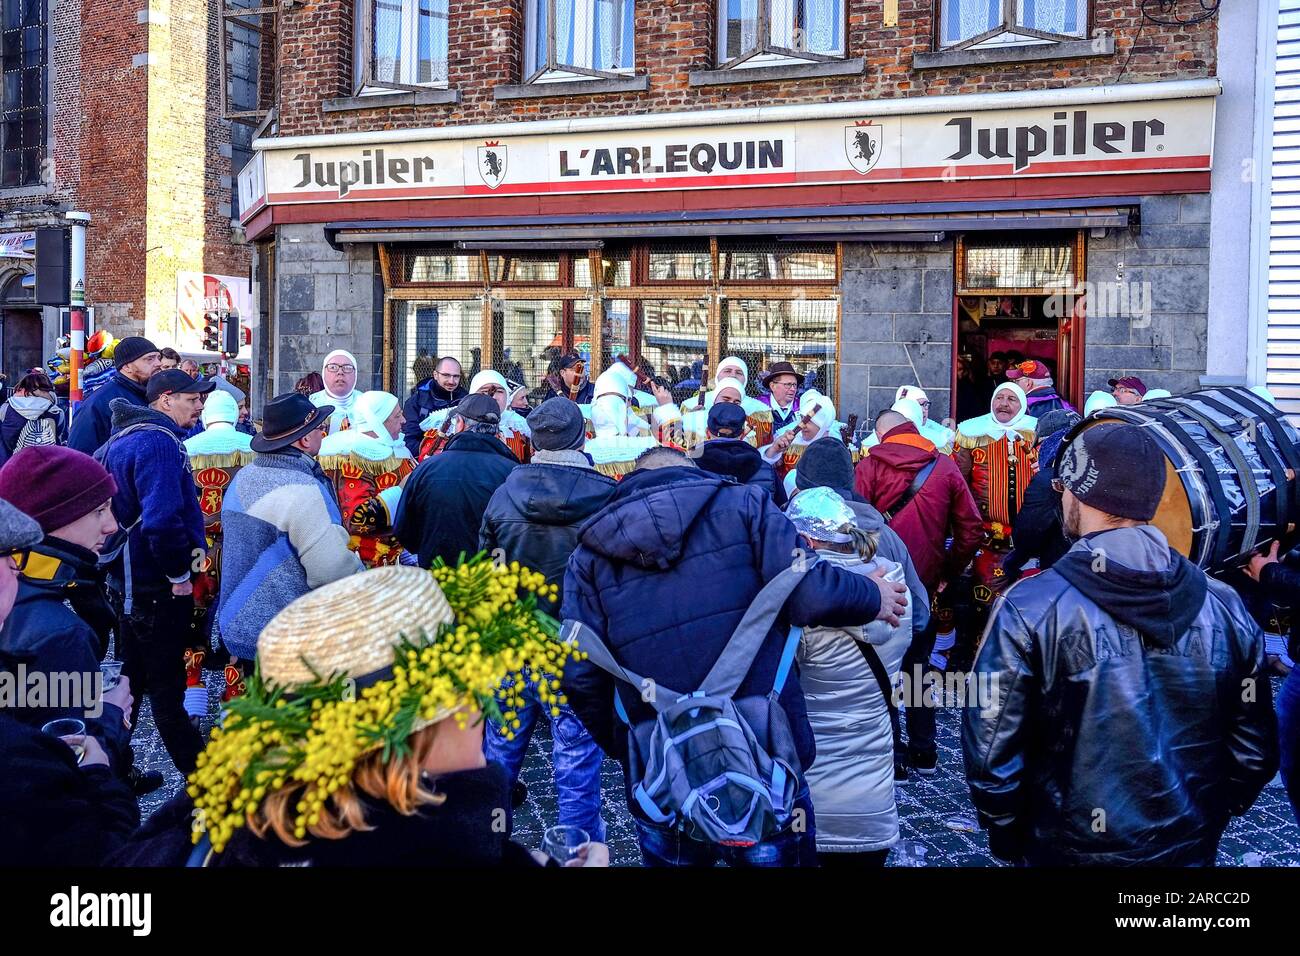 Binche, BELGIQUE - 18 févr. 2018: Rassemblement de Gilles de Binche avec public en avant-plan portant une participation portante un chapeau orné de mimos Banque D'Images